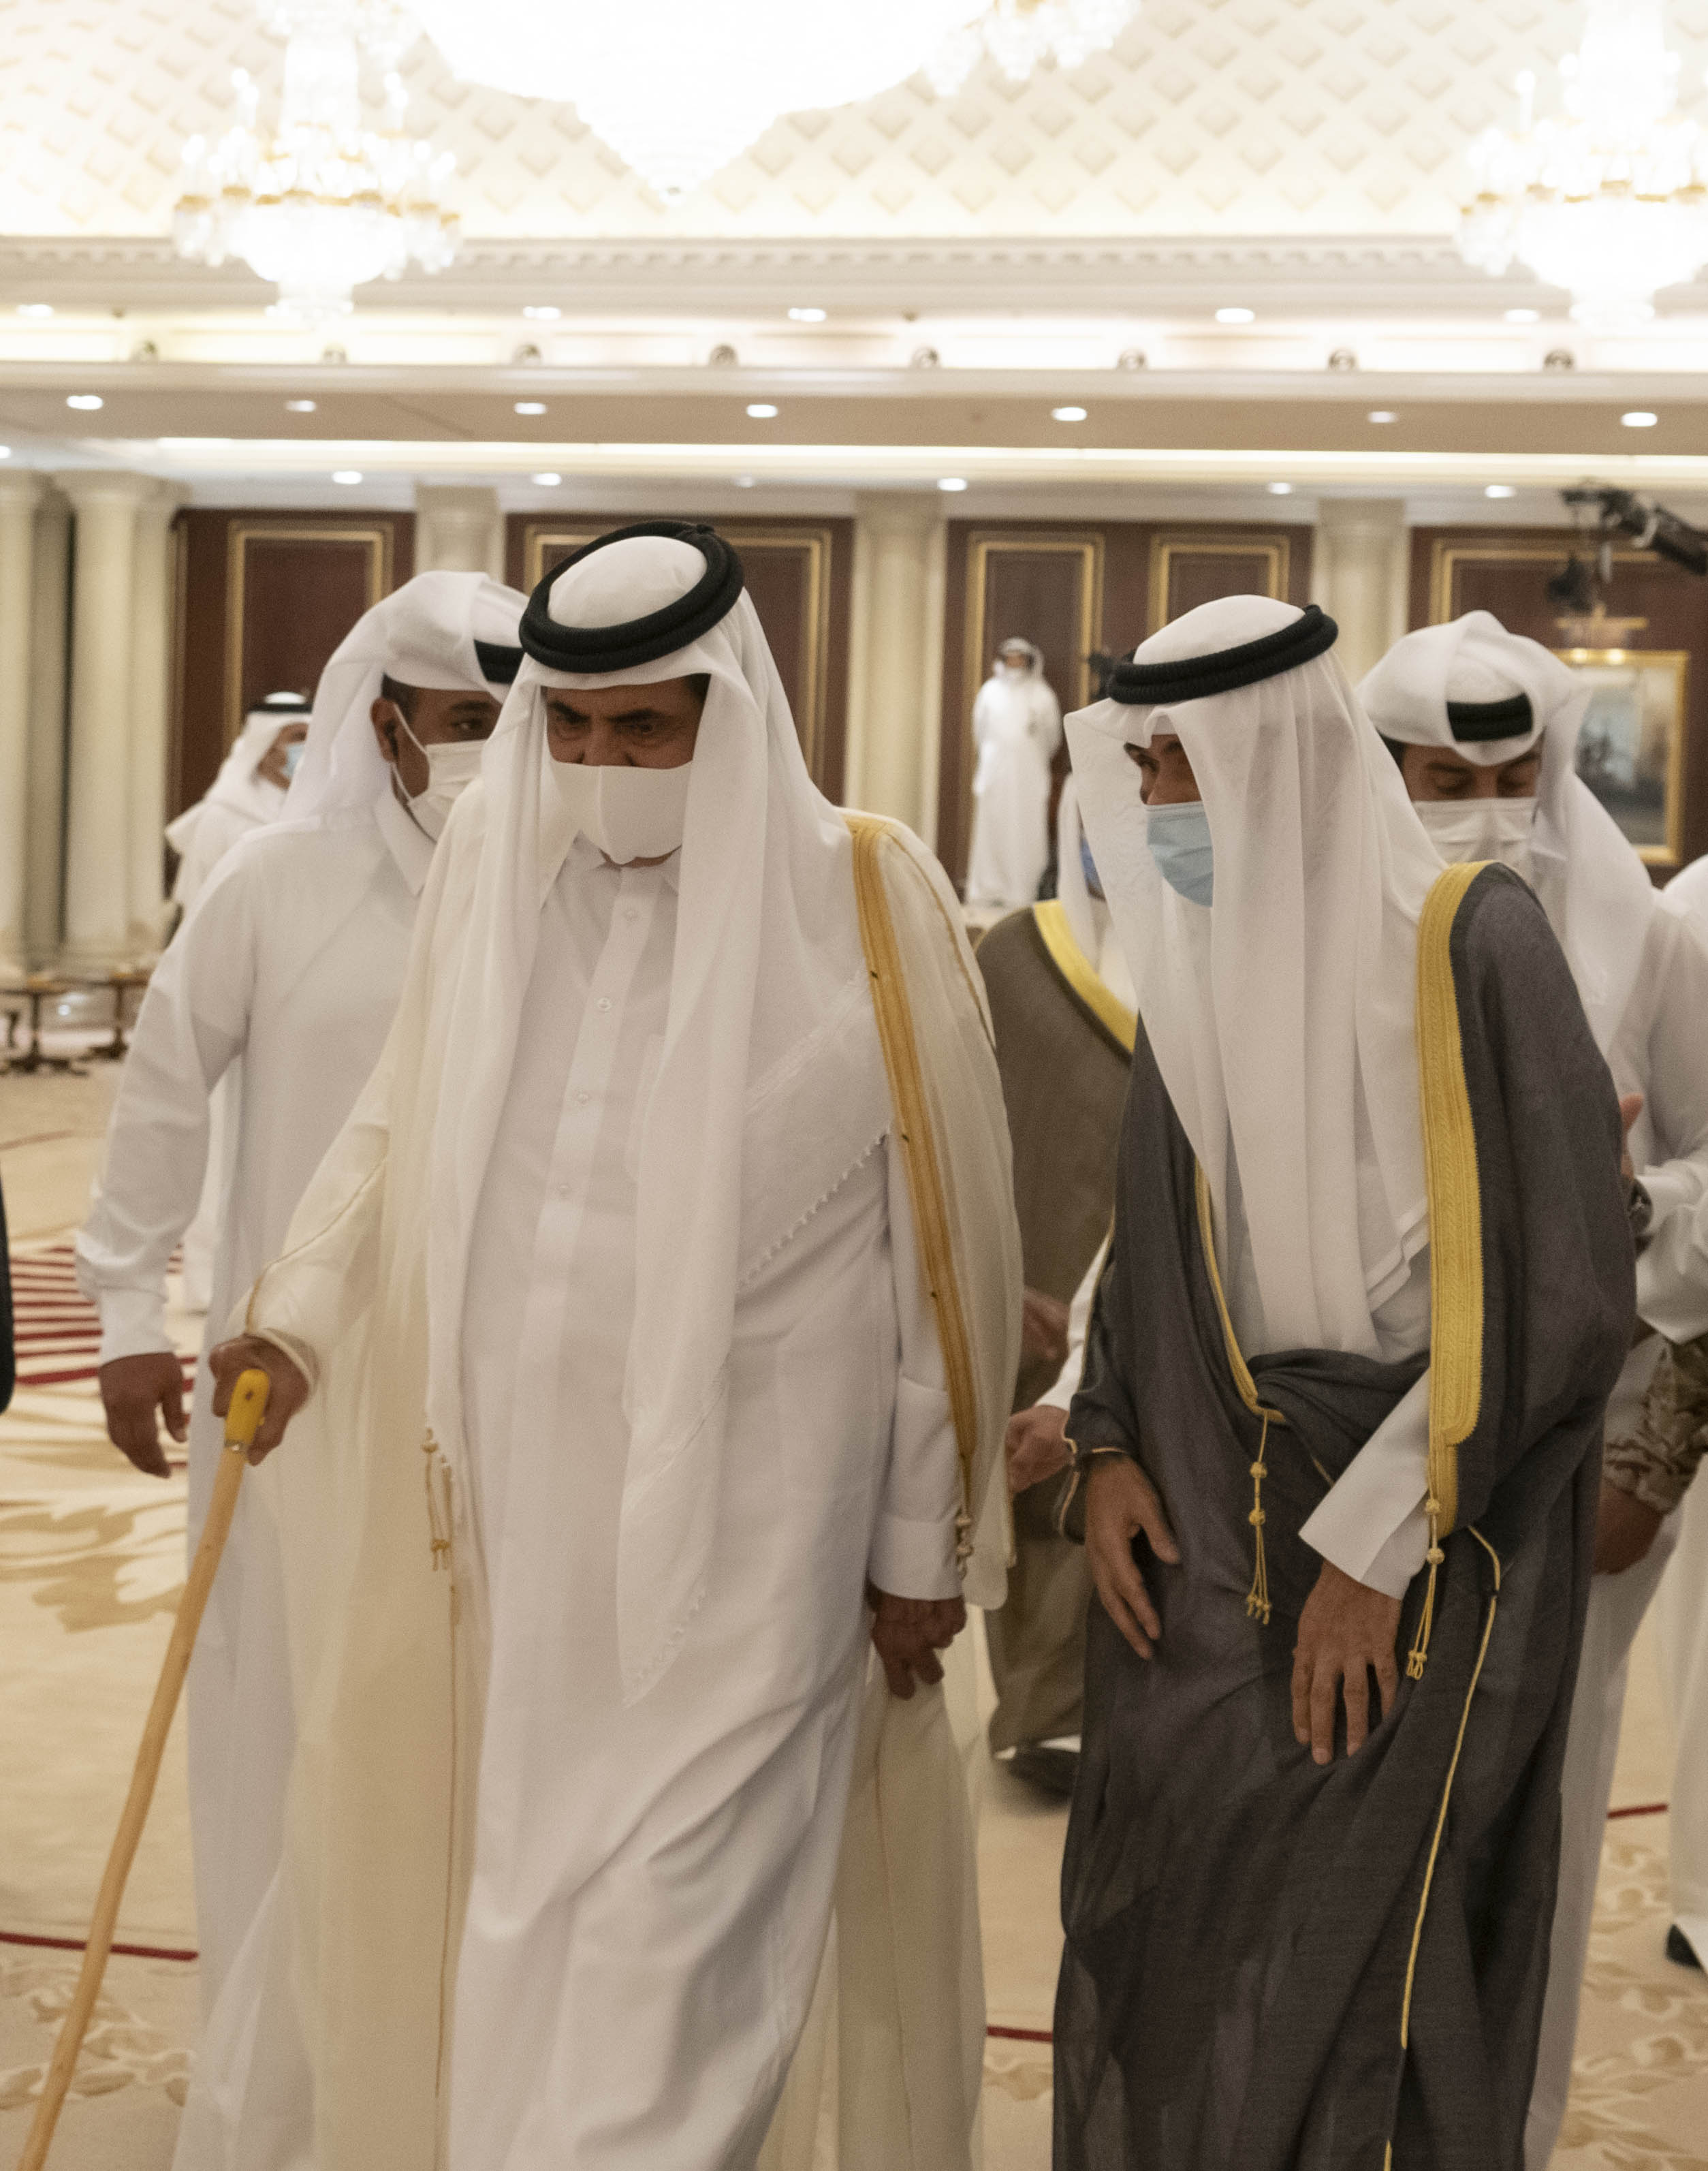 حمد بن خليفة يتكأ على عصا خلال تقديمه العزاء في الكويت